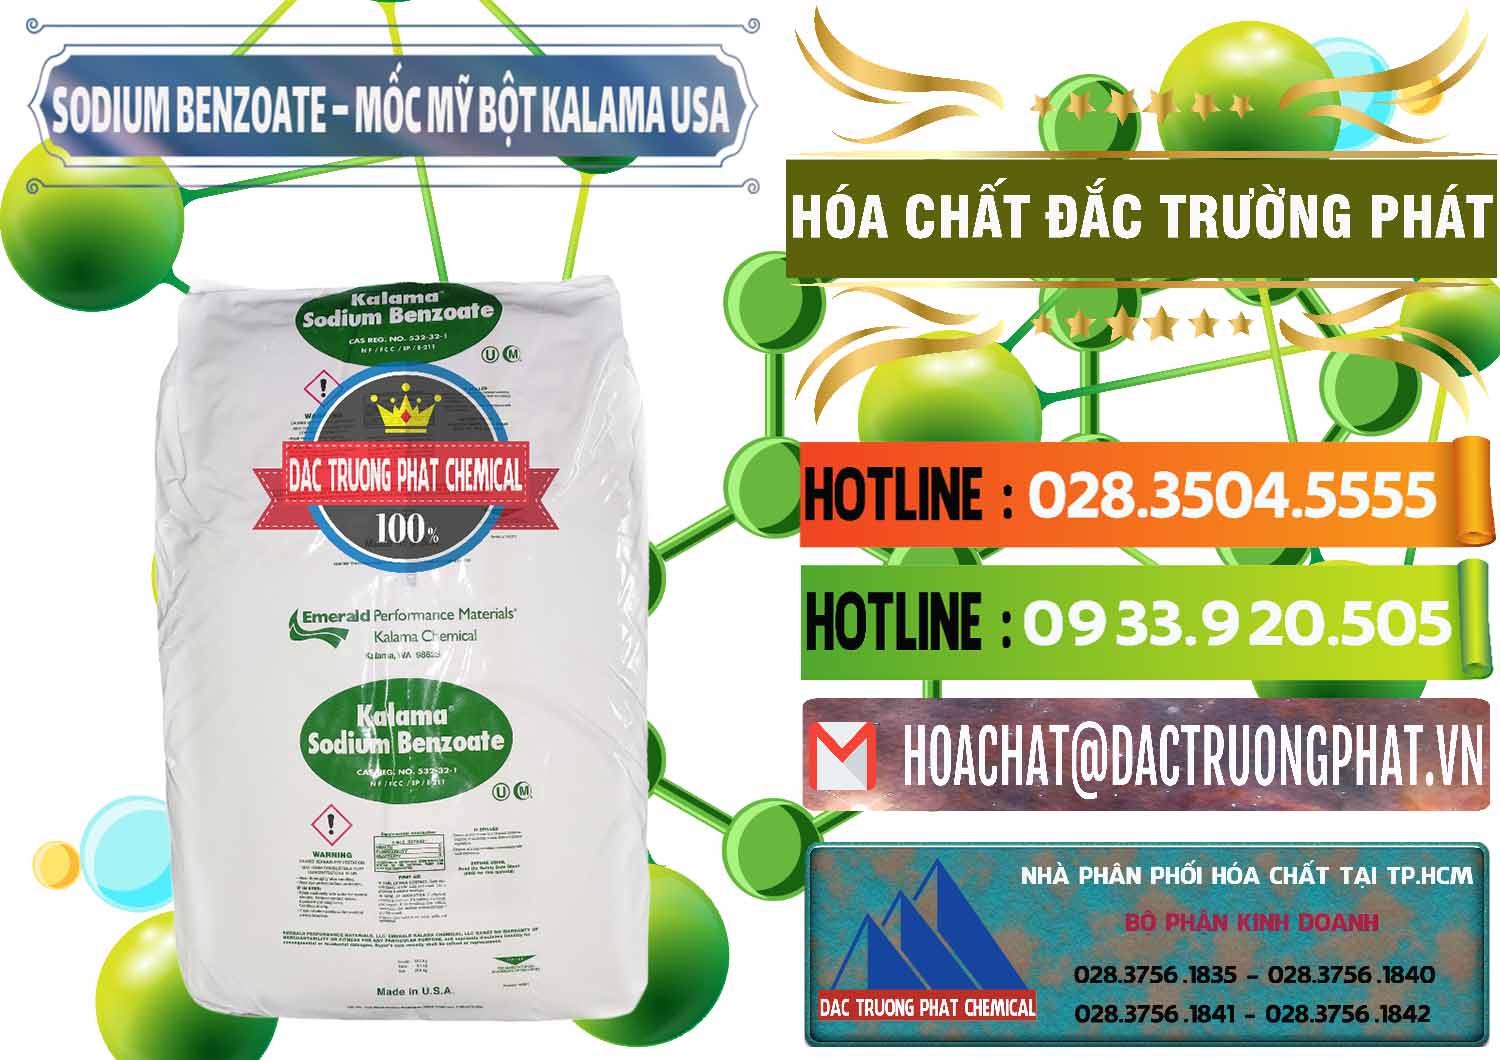 Cty chuyên bán - cung ứng Sodium Benzoate - Mốc Bột Kalama Food Grade Mỹ Usa - 0136 - Nhà cung cấp & phân phối hóa chất tại TP.HCM - cungcaphoachat.com.vn